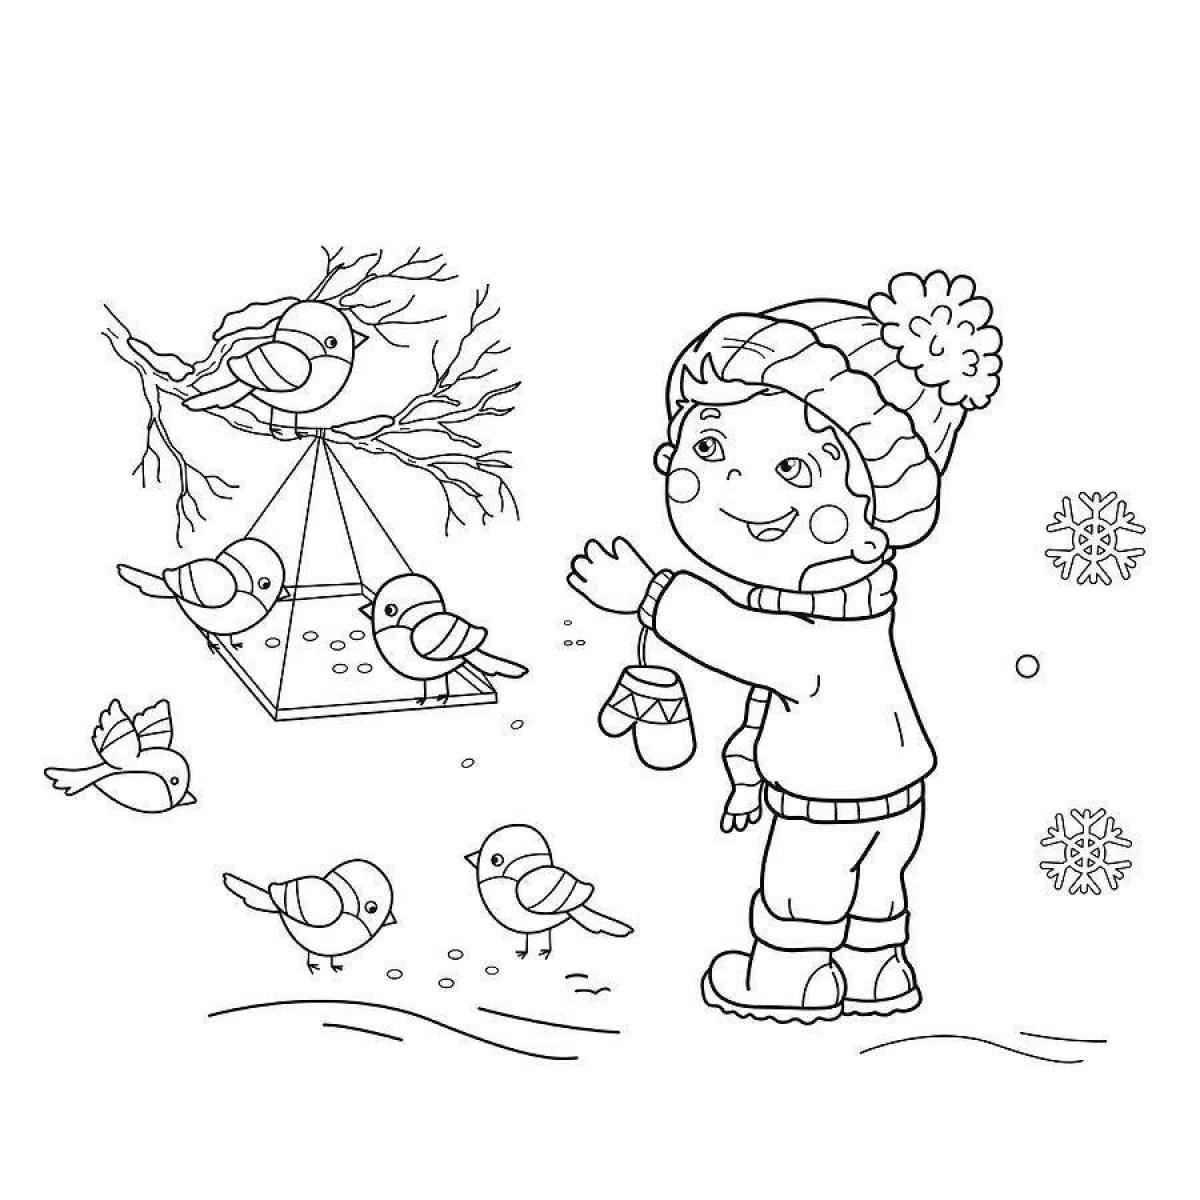 How to help birds in winter #5